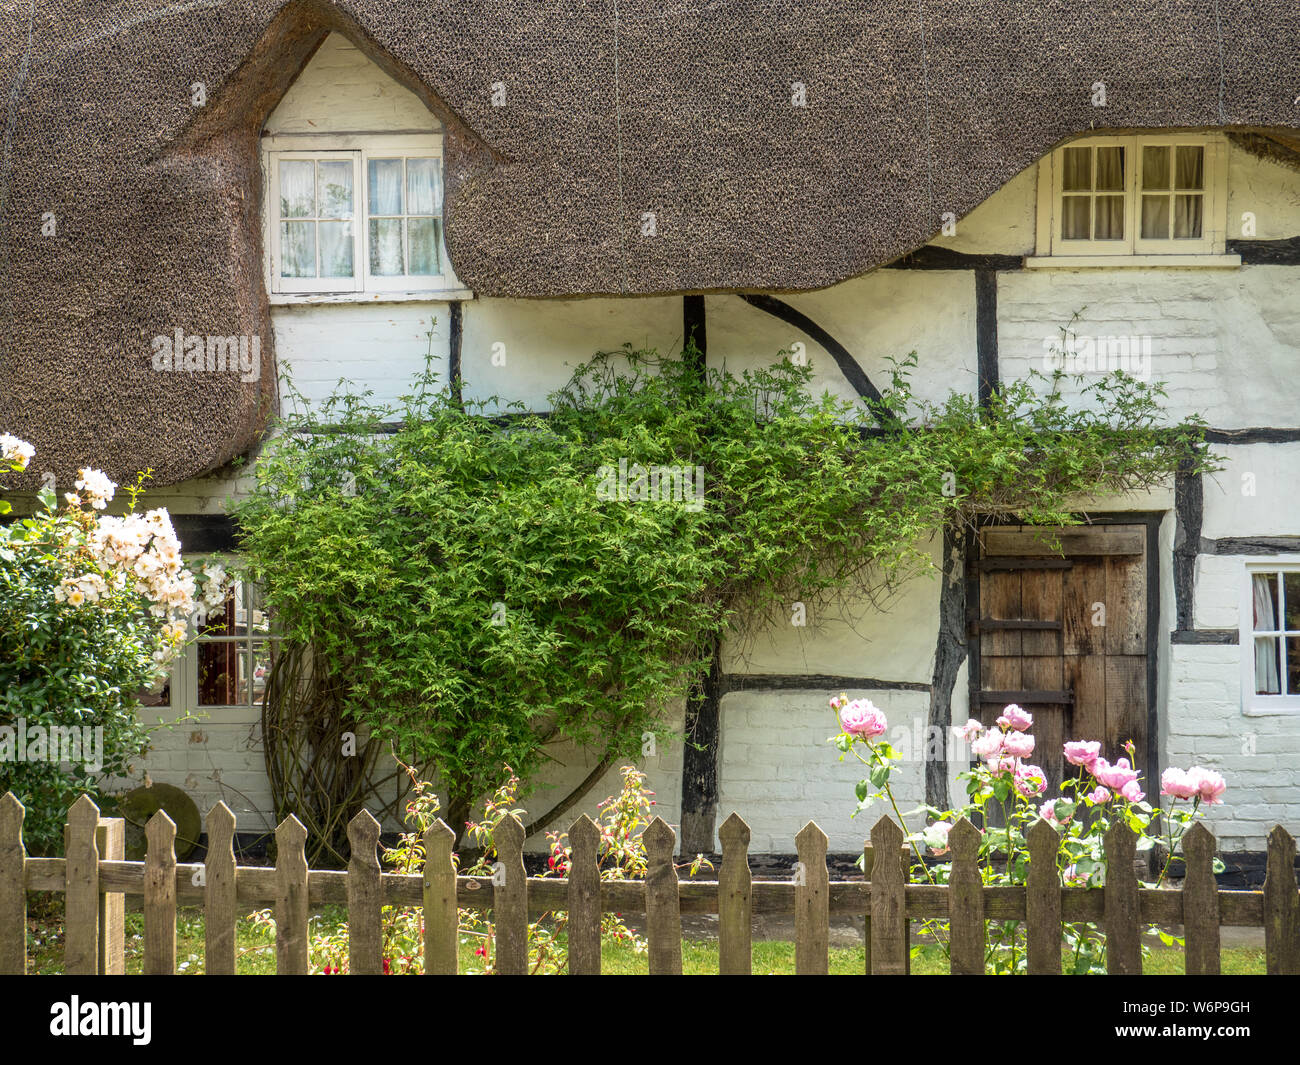 Casita con techo de paja, idilio rural, colinas de Chiltern, Aldworth, Berkshire, Inglaterra, Reino Unido, GB. Foto de stock